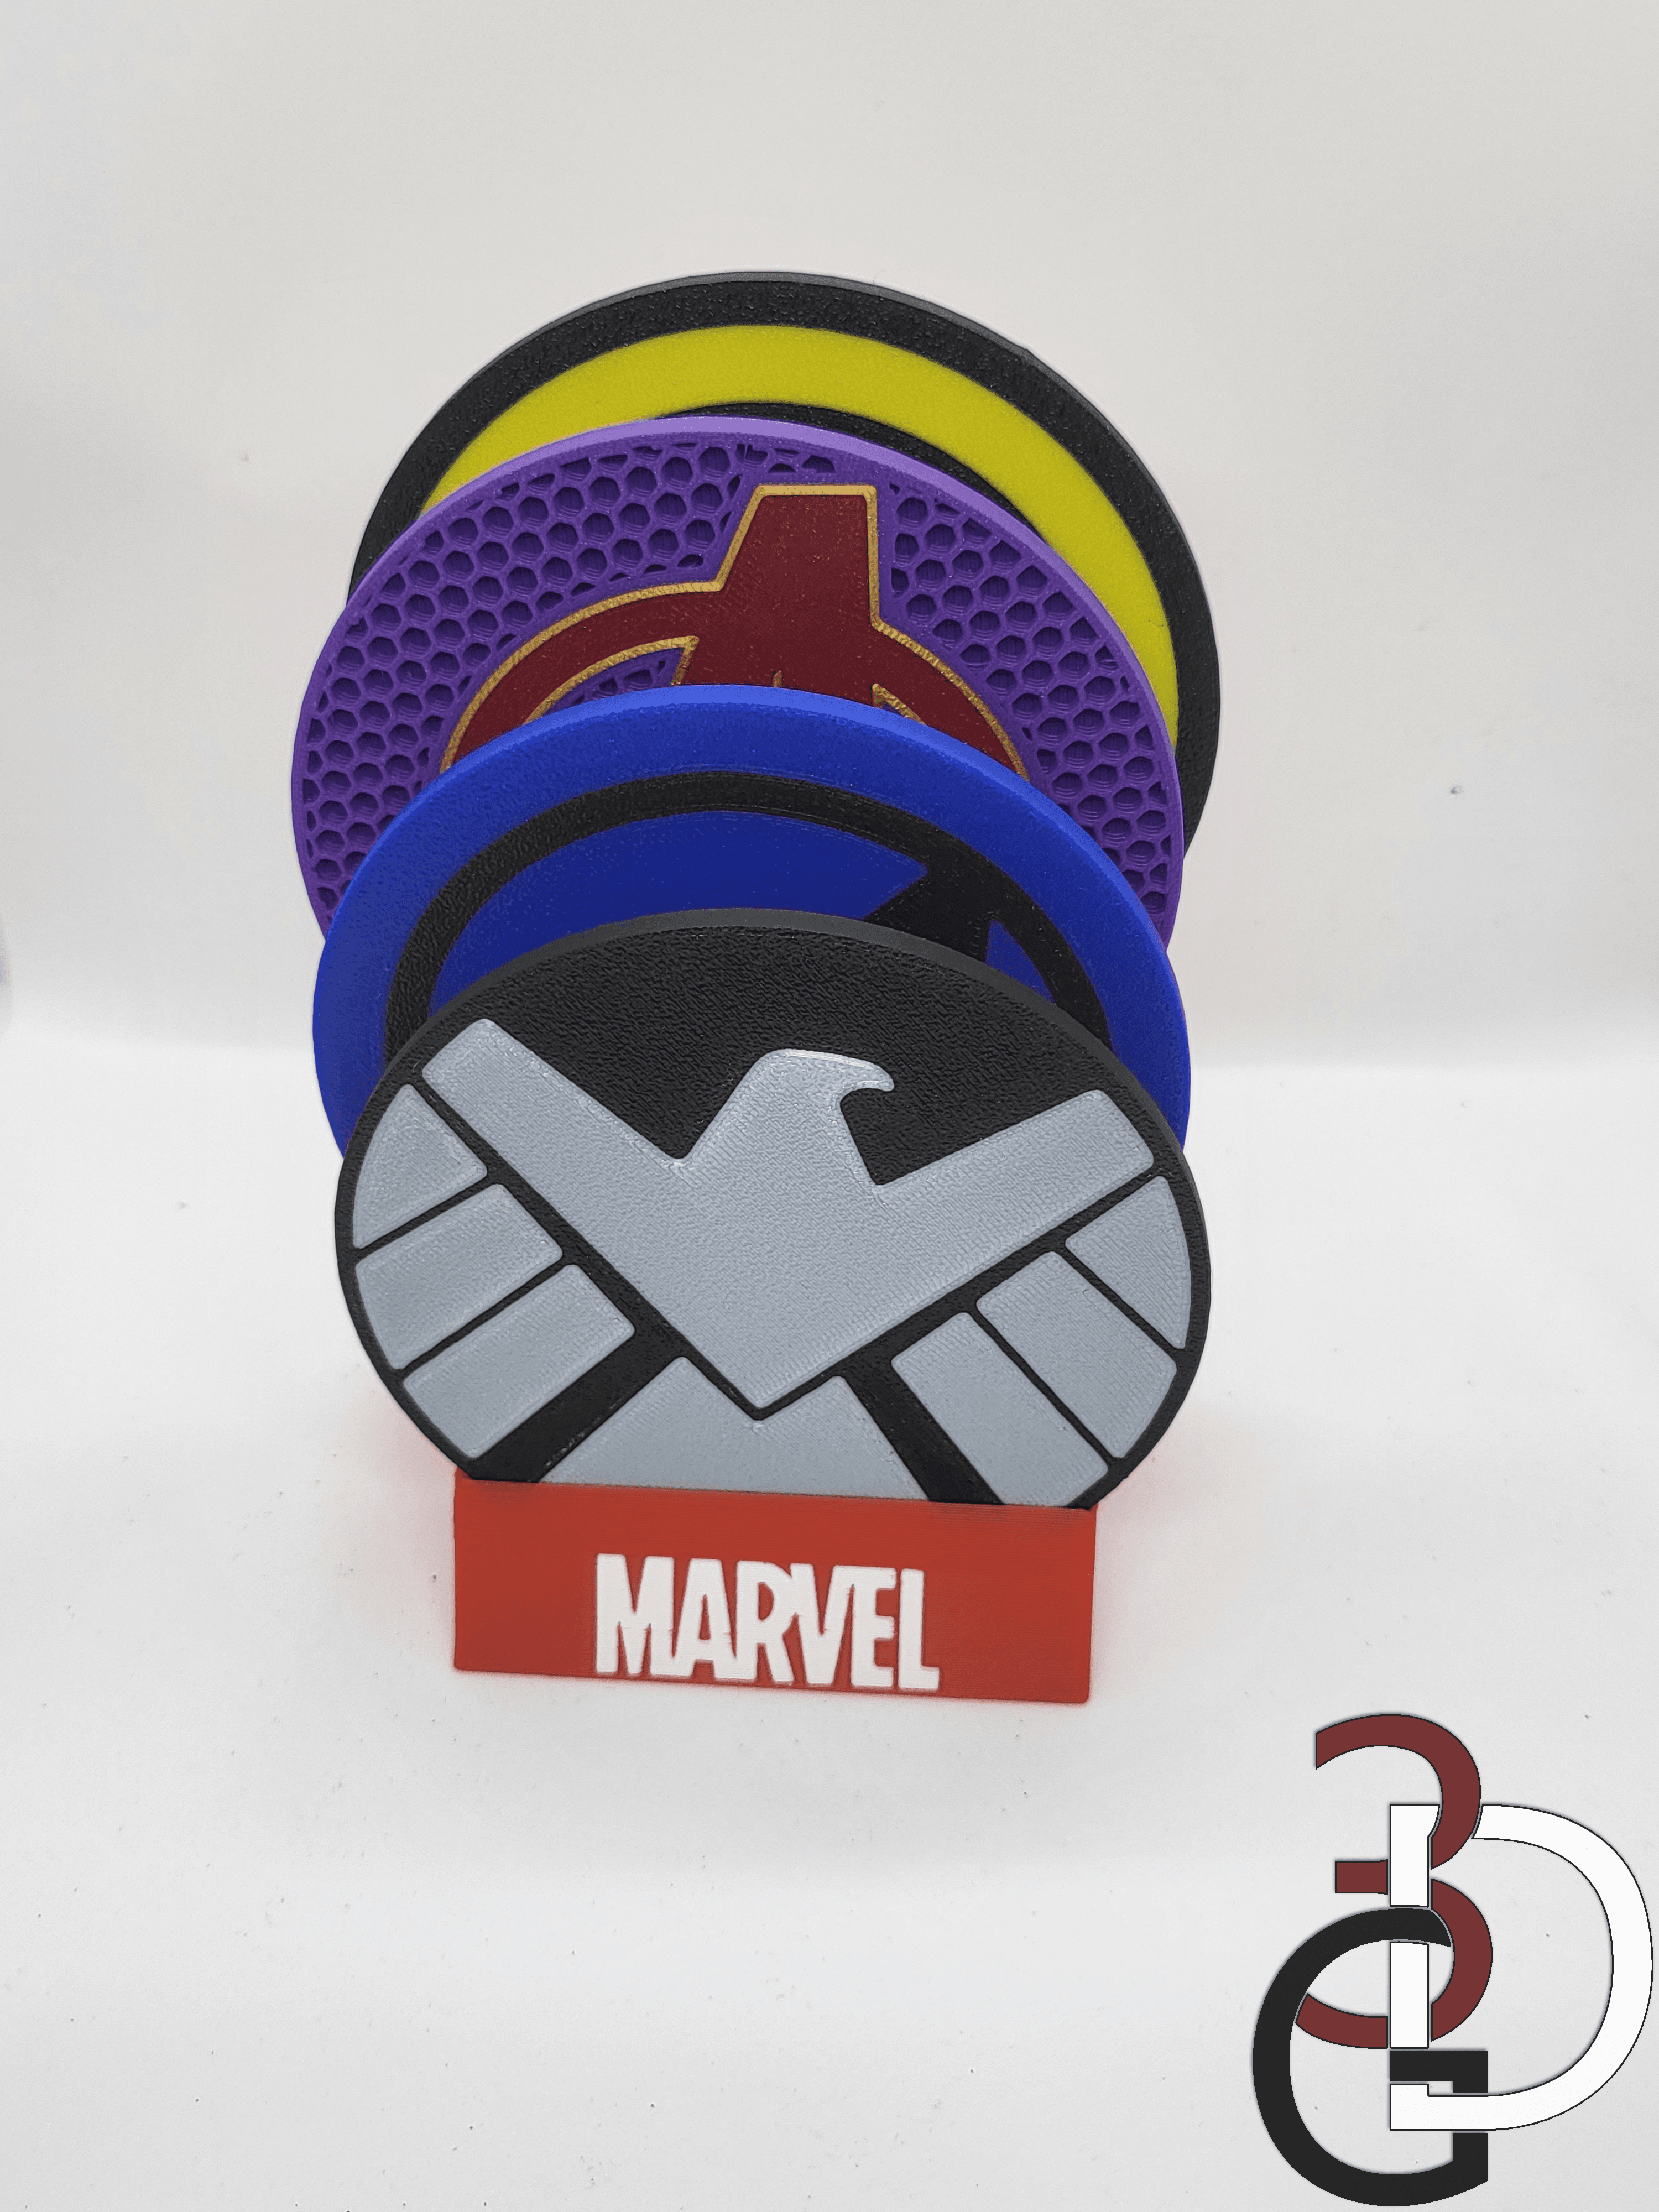 Marvel themed coaster holder 3d model